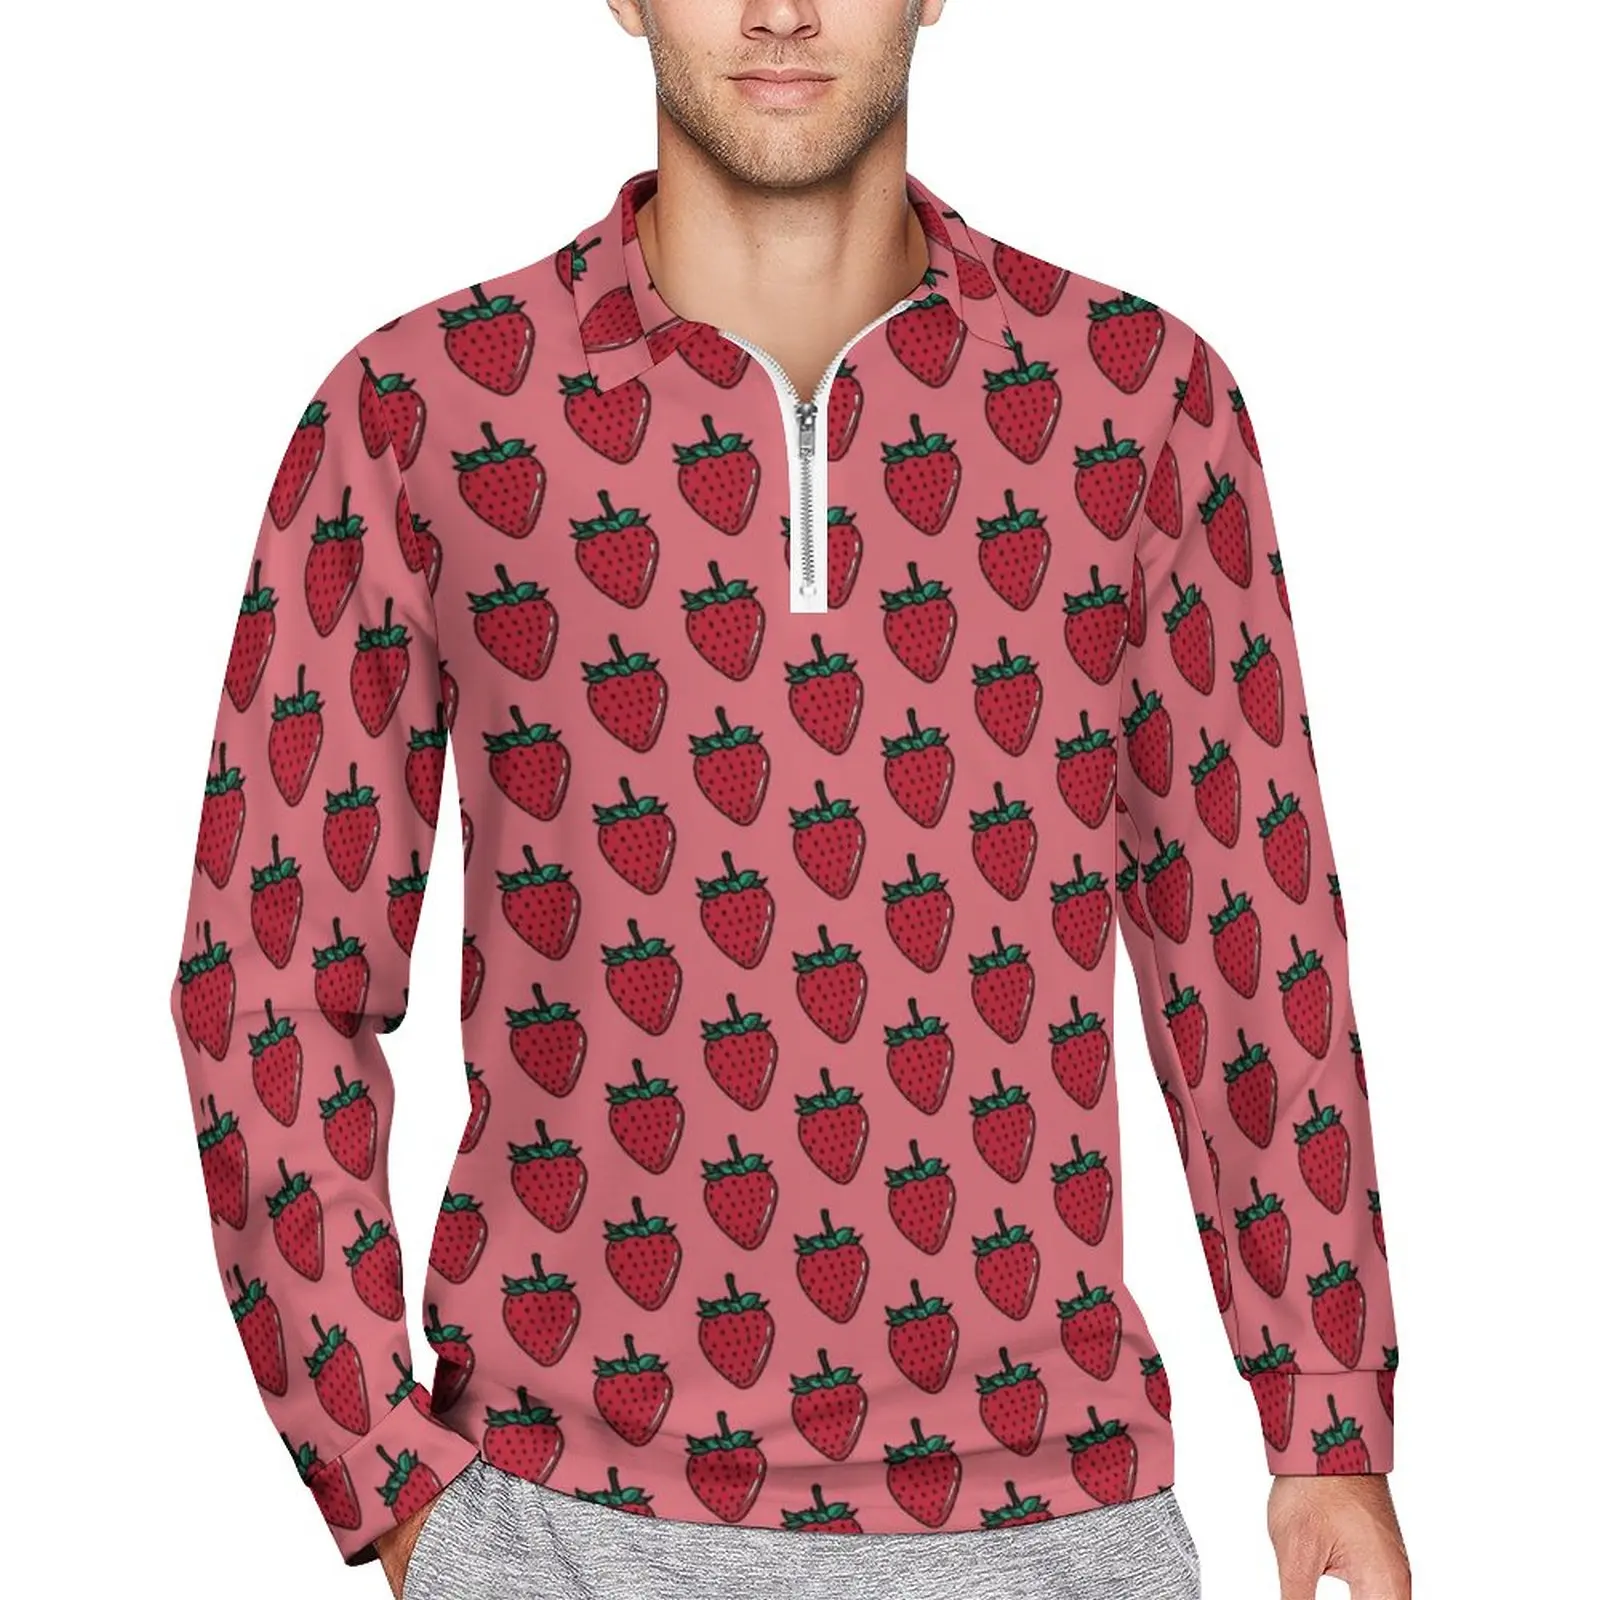 

Футболка-поло мужская с длинным рукавом, Повседневная стильная рубашка с принтом клубники, чая, розы, фрукты, топ на заказ, большие размеры